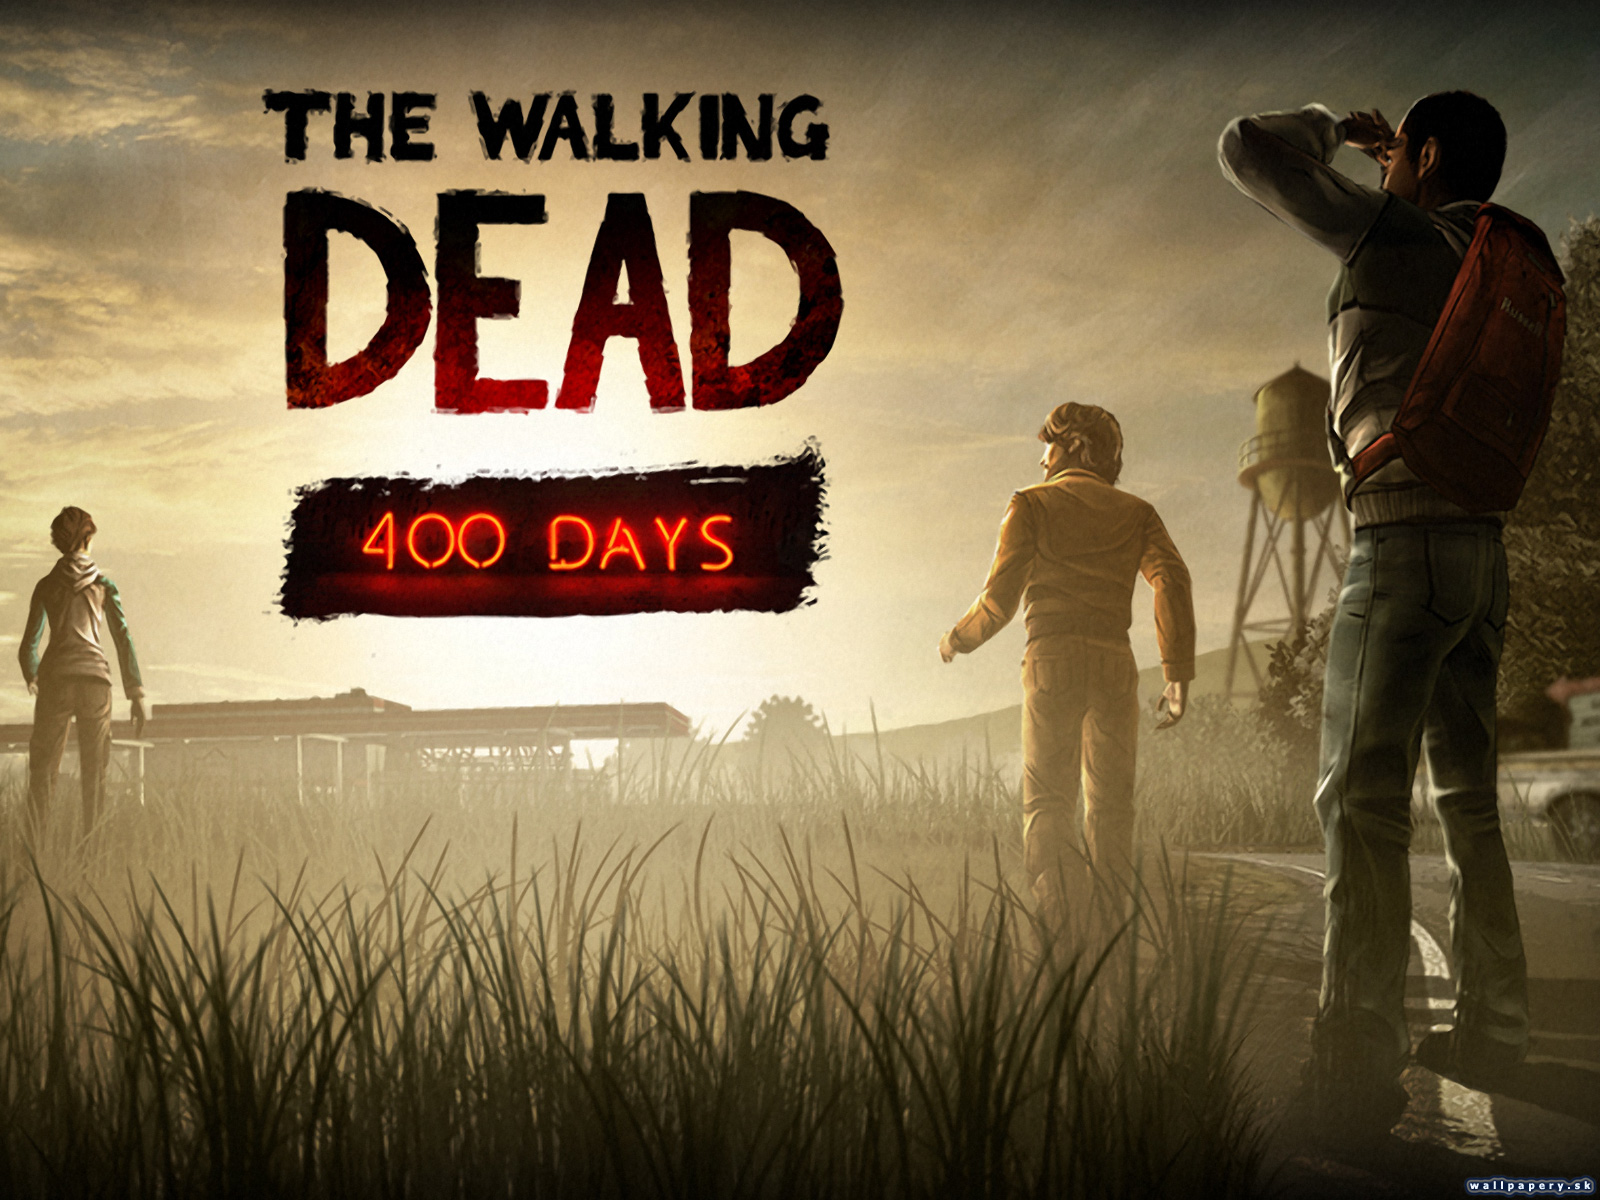 The Walking Dead: 400 Days - wallpaper 2